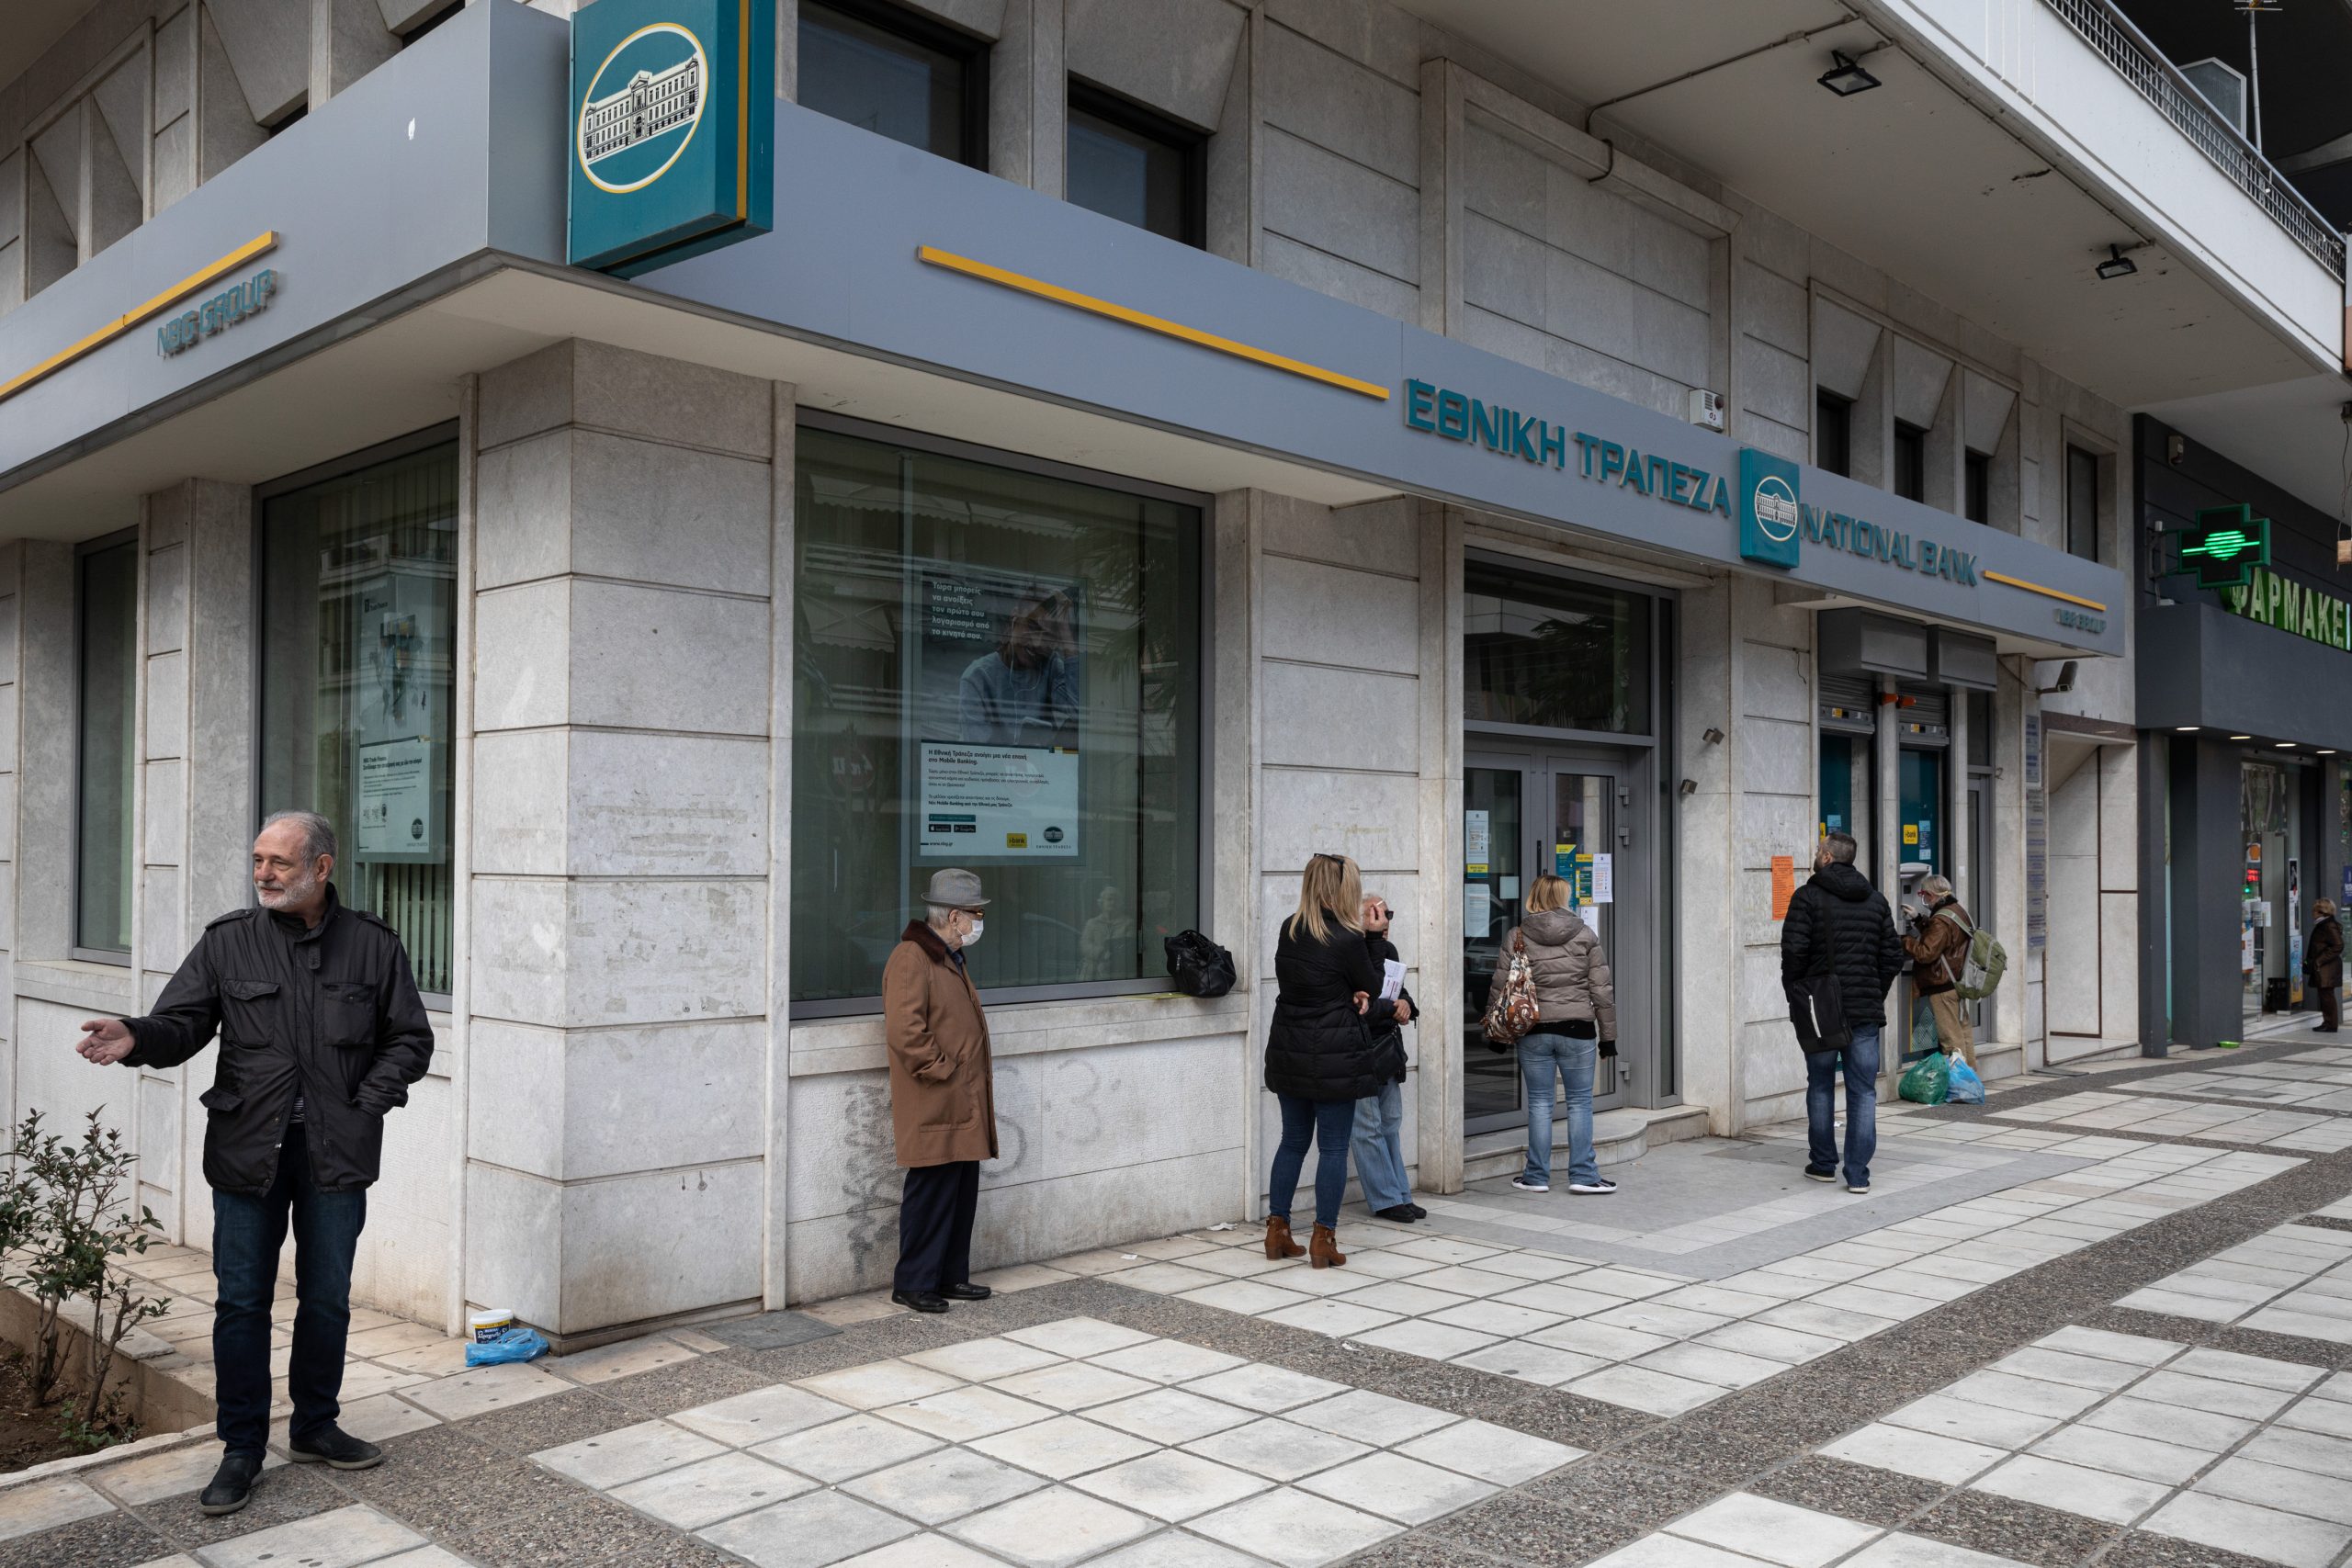 ΟΤΟΕ – Έκλεισε 1 στα 5 υποκαταστήματα σε 3 χρόνια, μειώθηκαν αναλογικά και τα ΑΤΜ